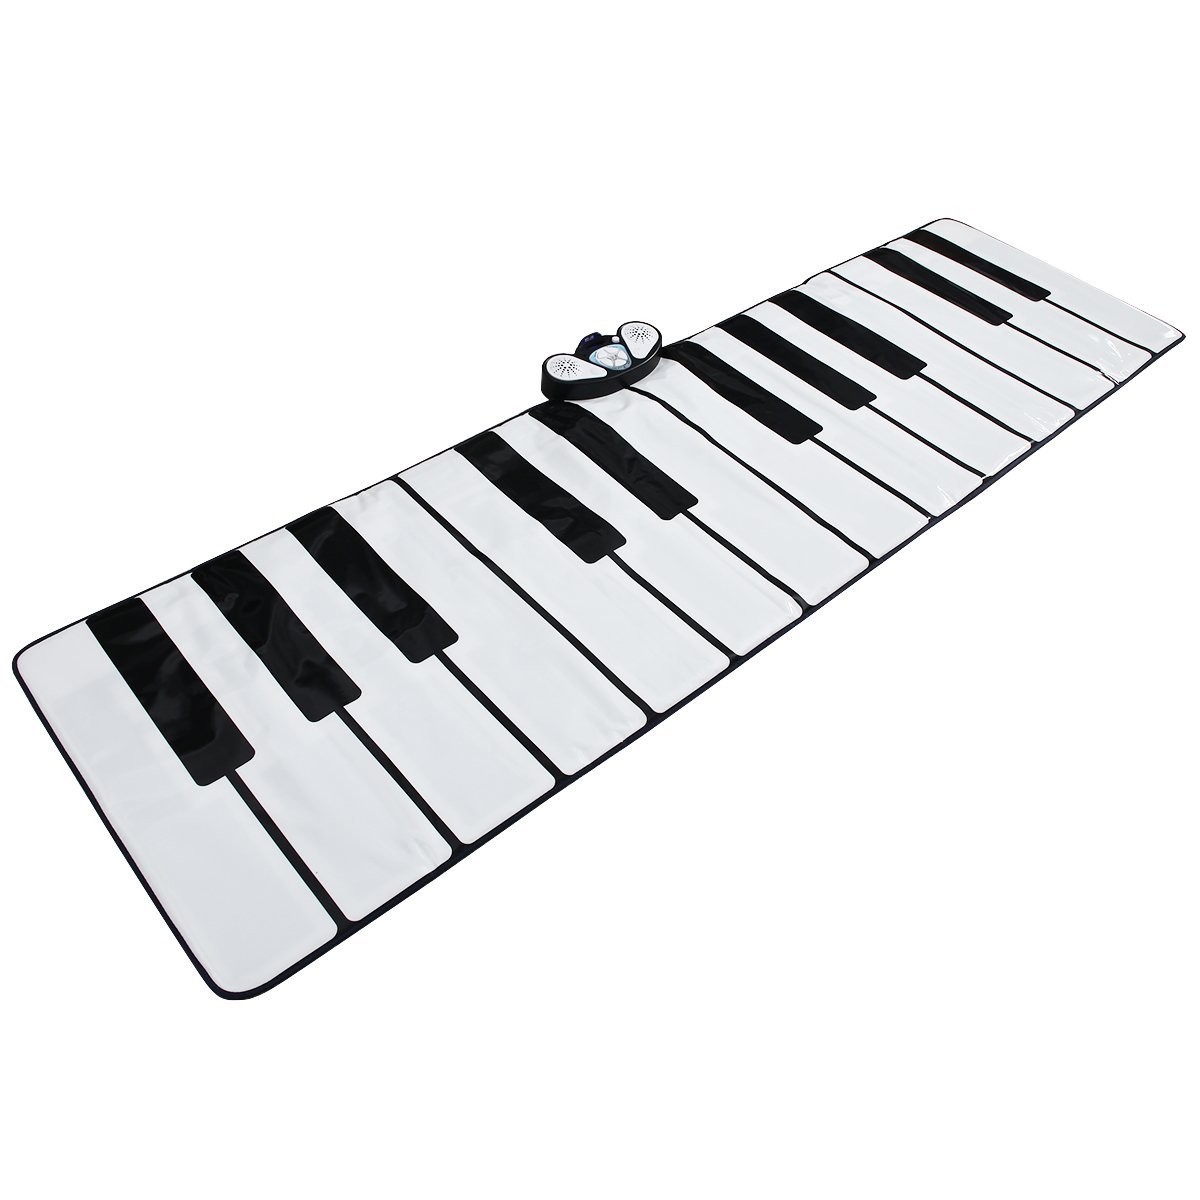 Piano Keyboard Drawing at GetDrawings Free download